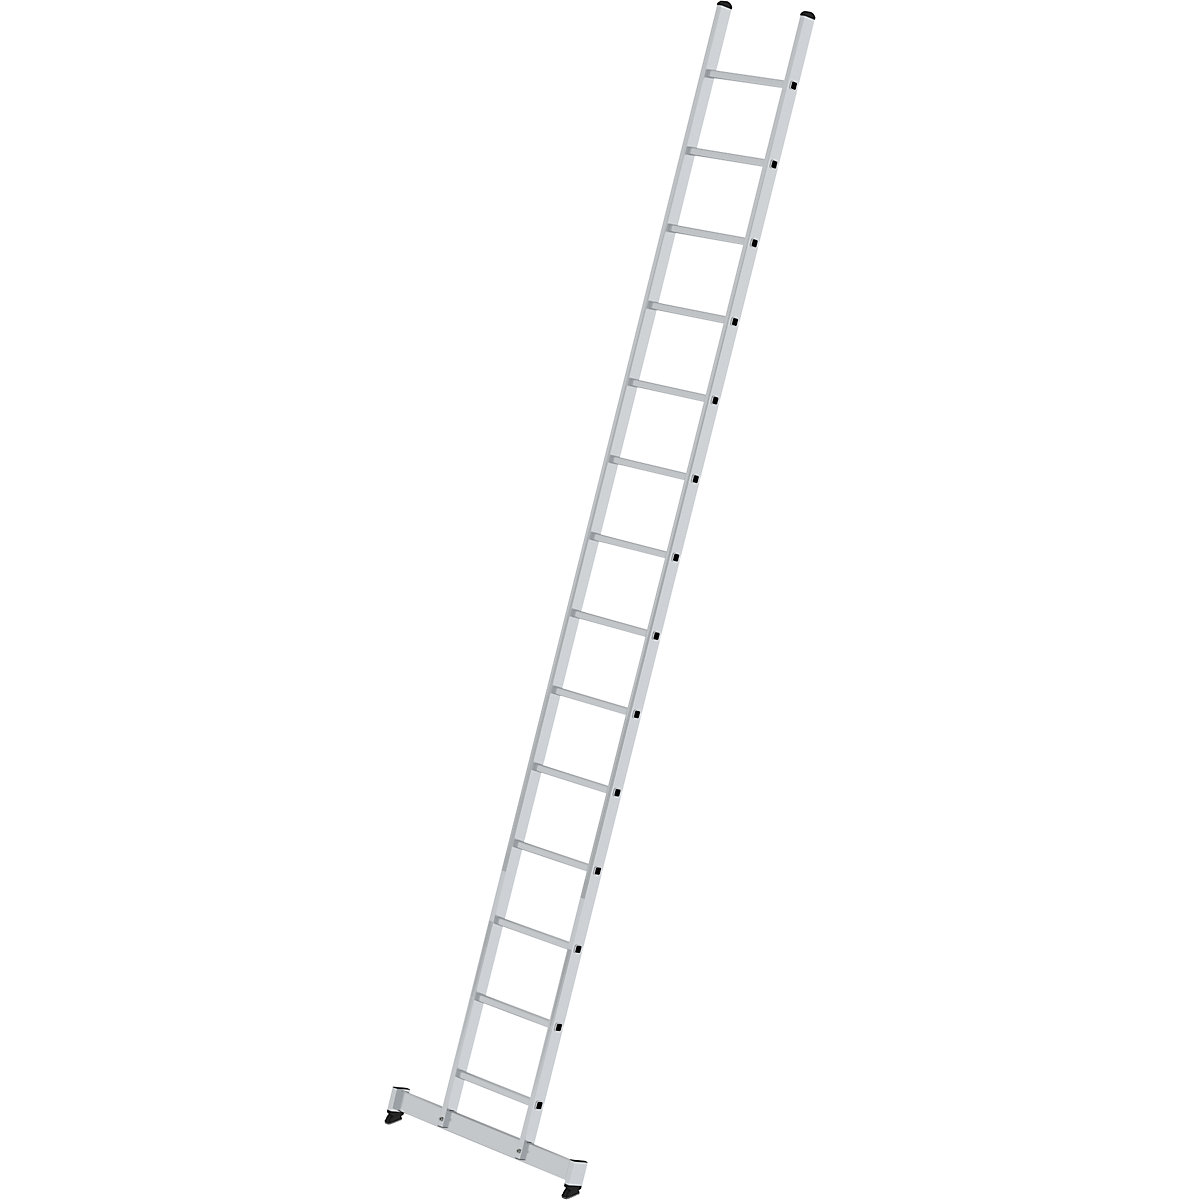 Prislonska lestev s klini – MUNK, profesionalna izvedba, širina 420 mm, 14 klinov, s prečko nivello®-9